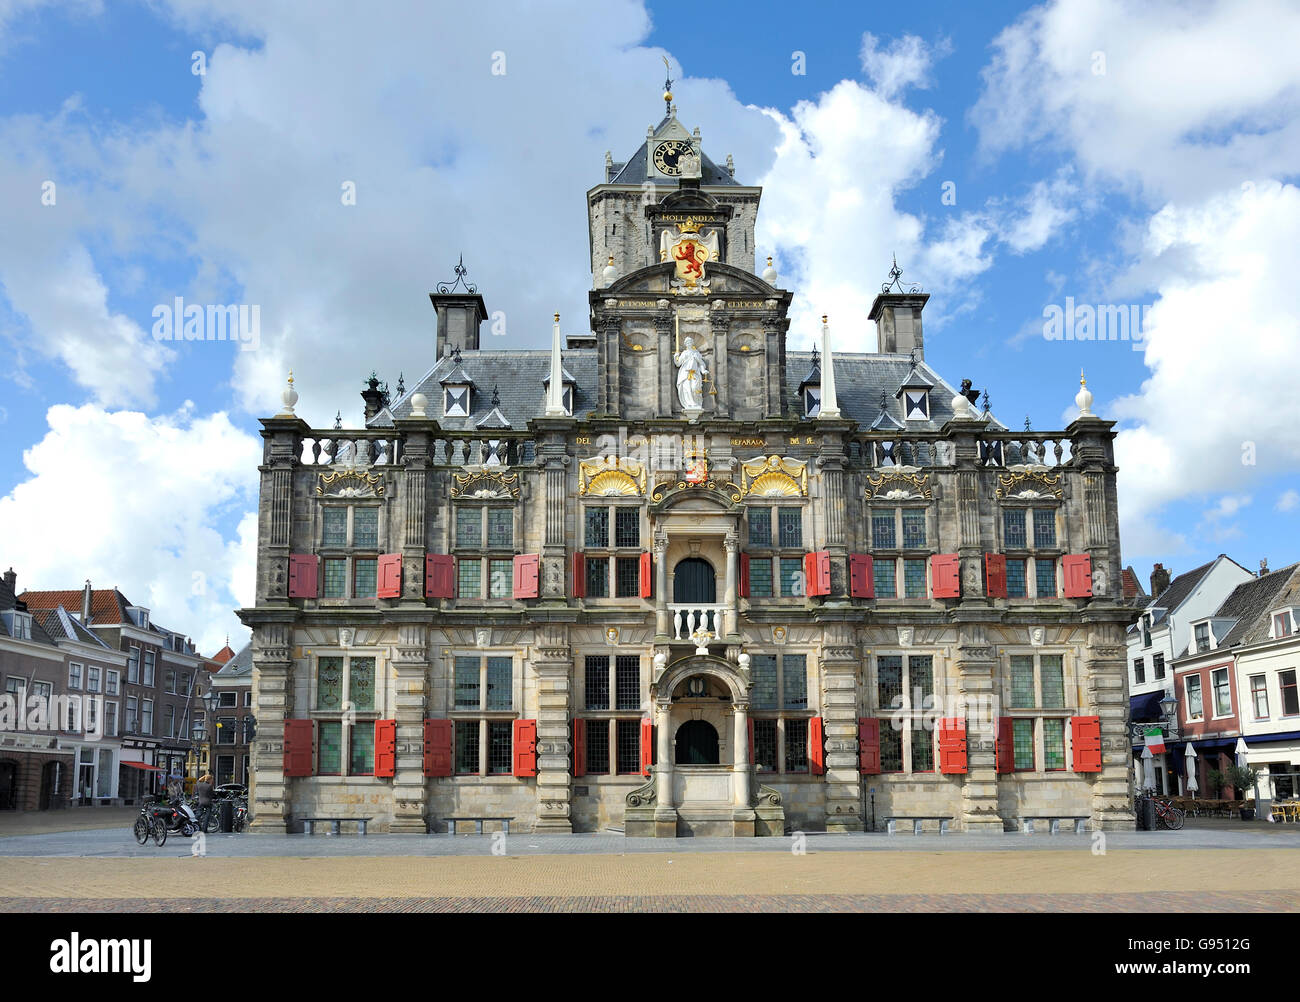 Hôtel de ville sur la place du marché à Delft, Pays-Bas Photo Stock - Alamy